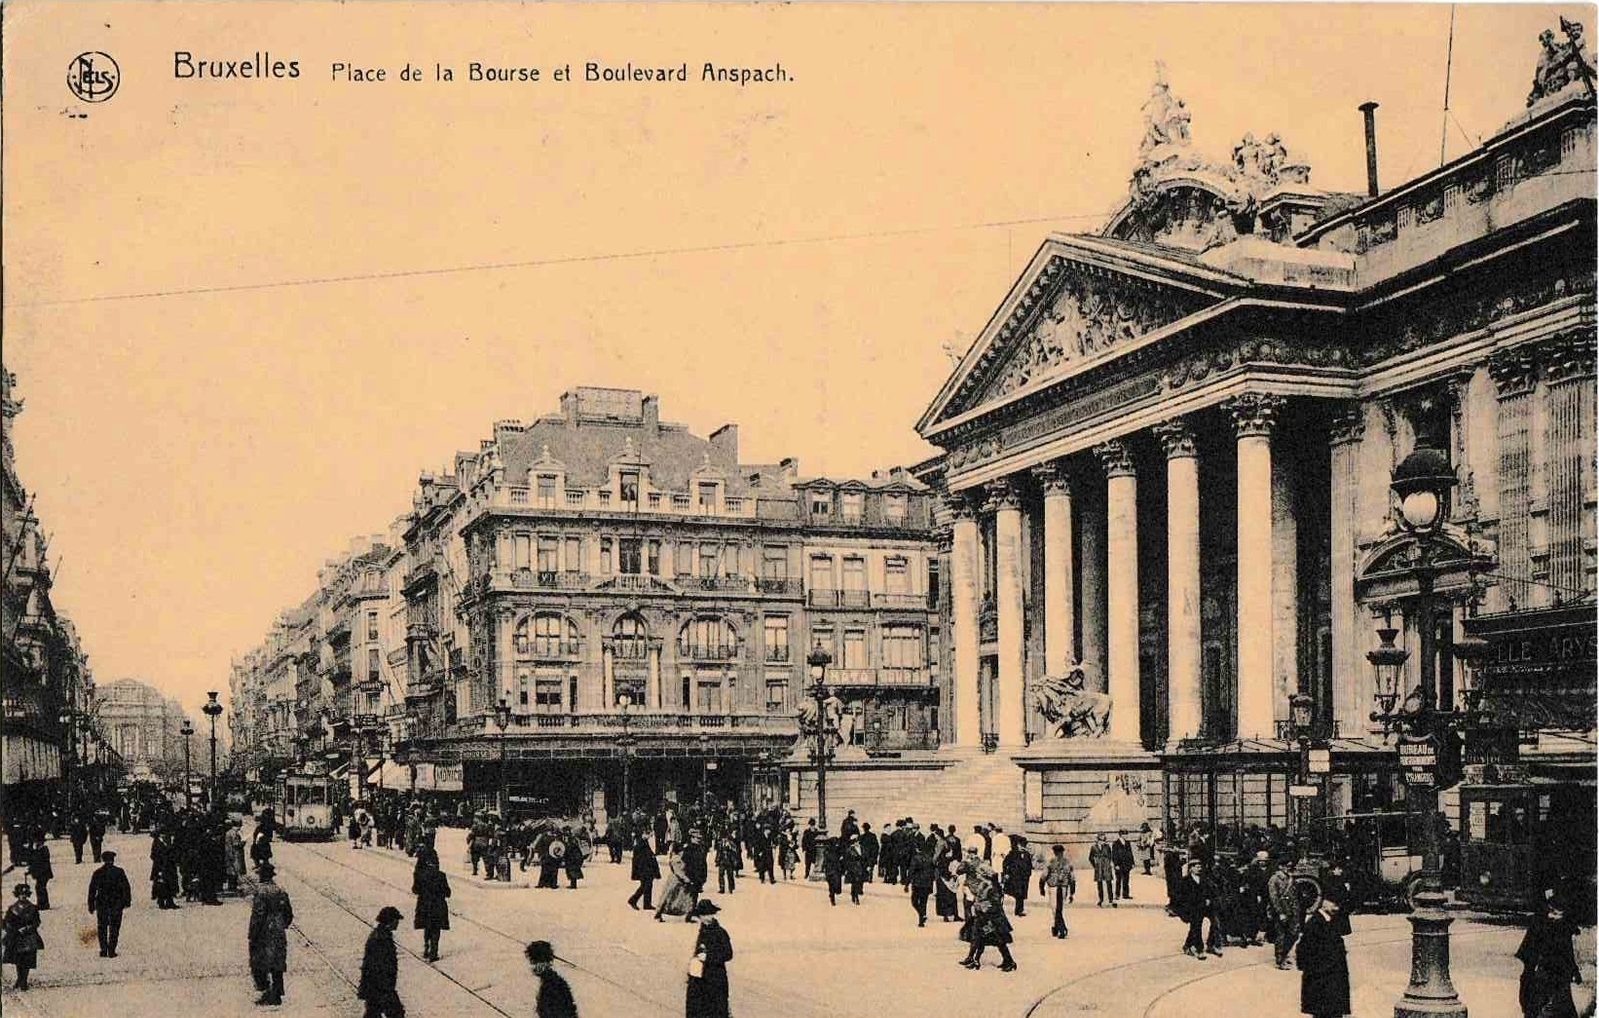 Bruxelles 1922 c geneanet org